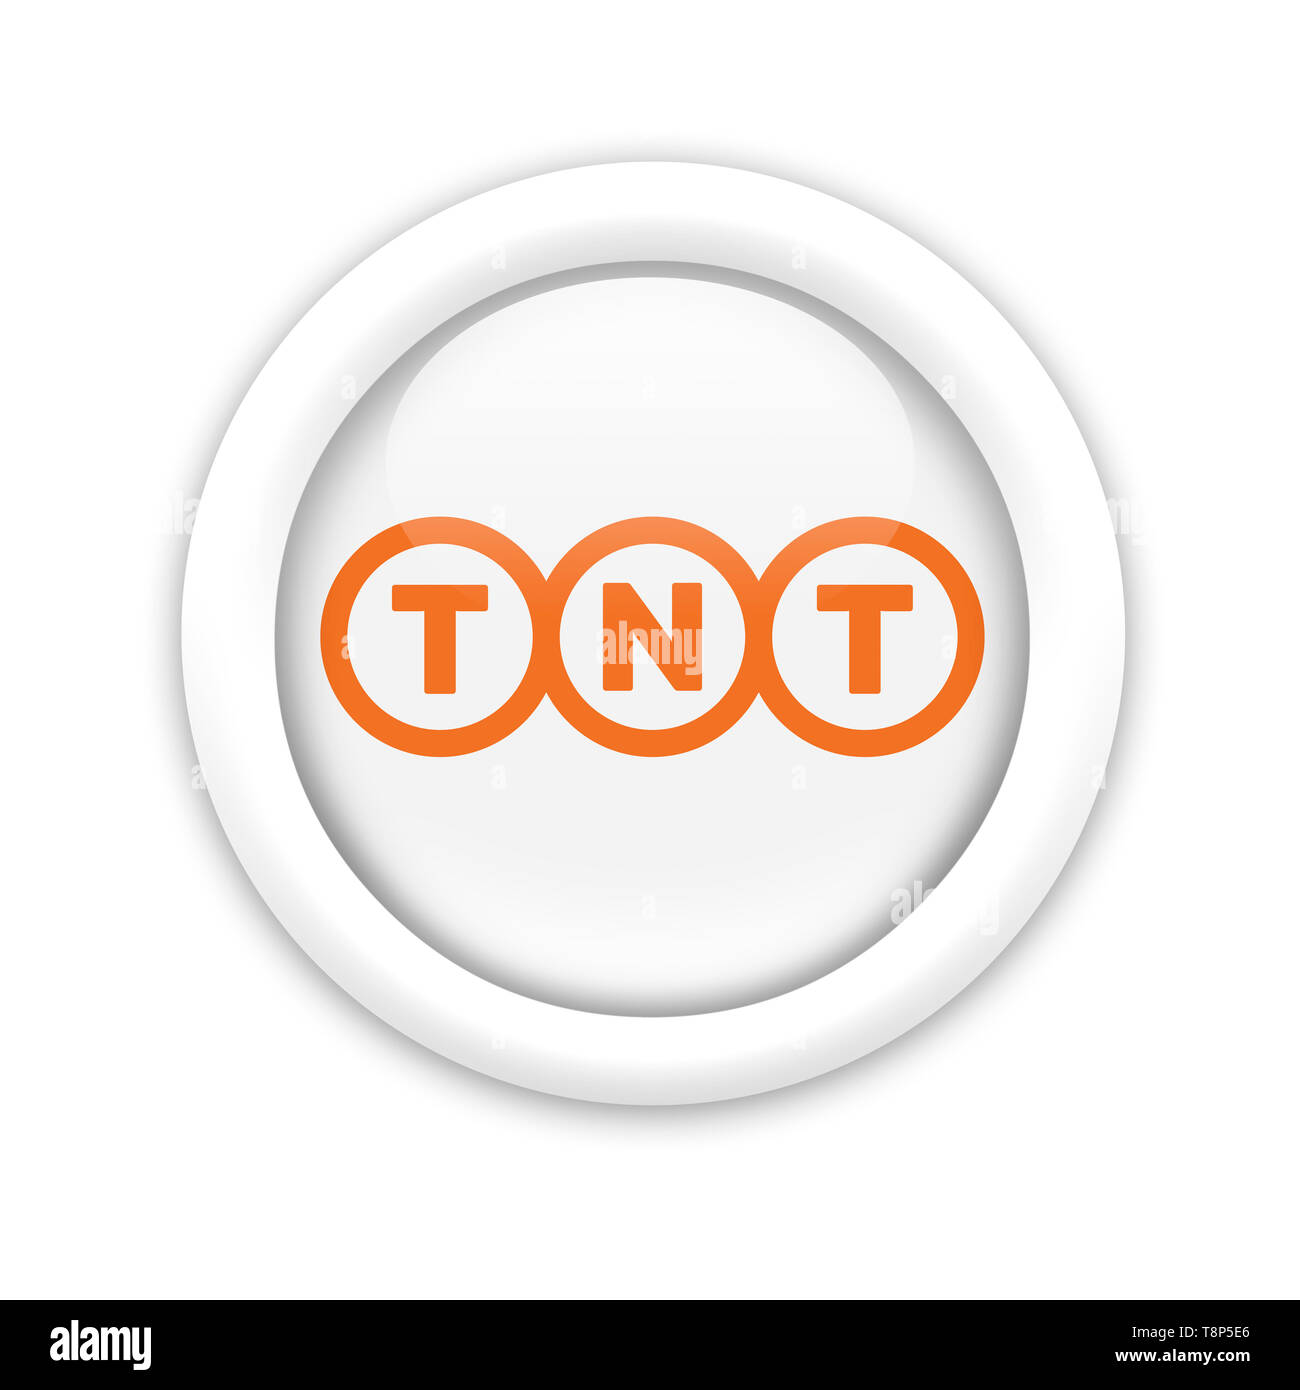 TNT logo Stock Photo